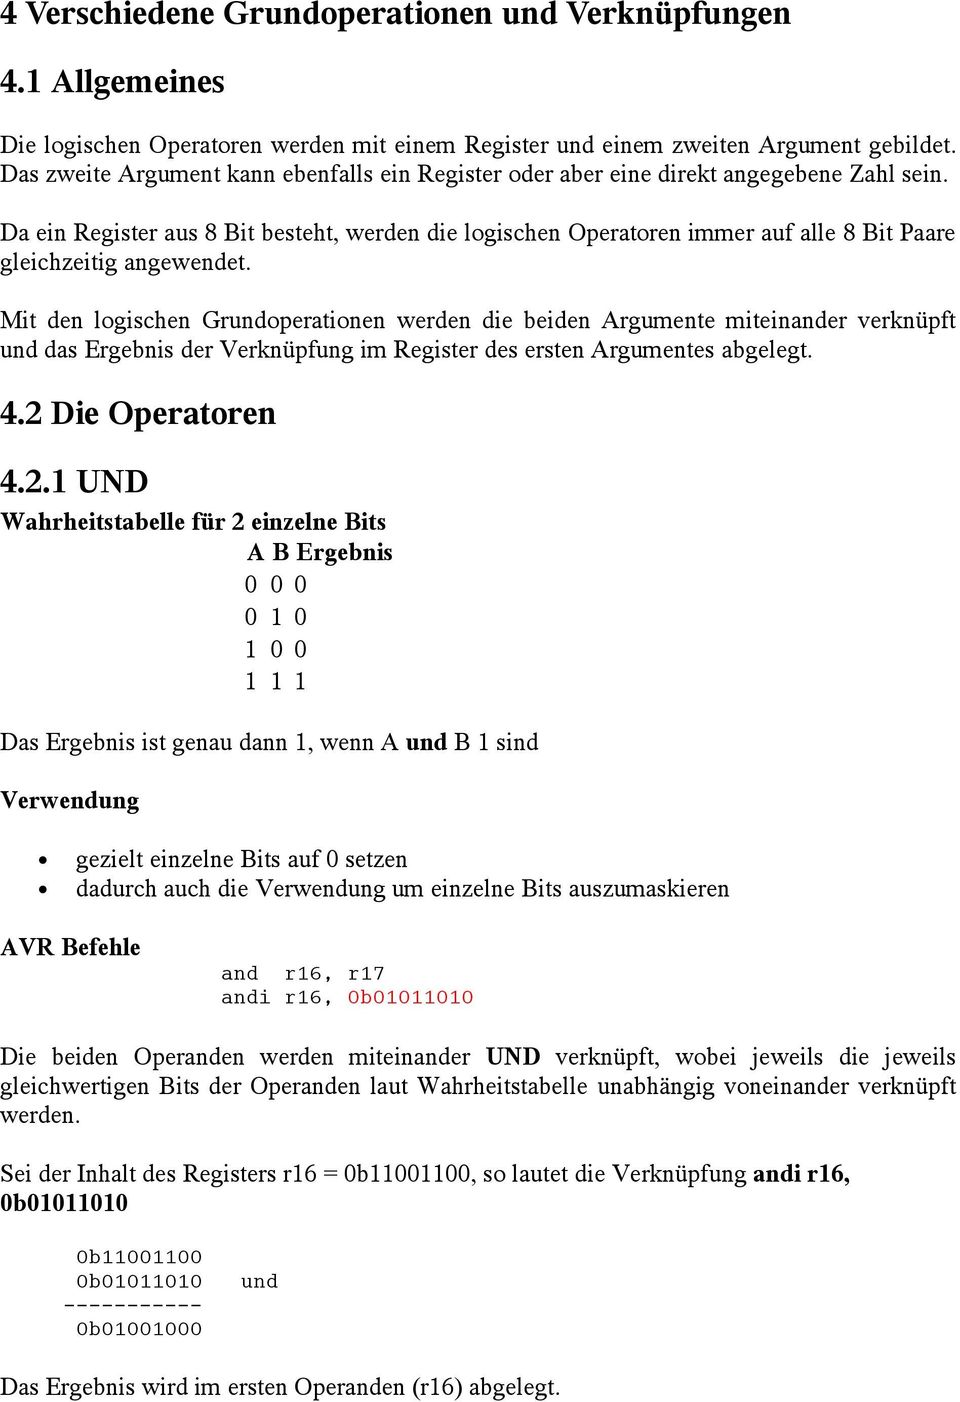 Da ein Register aus 8 Bit besteht, werden die logischen Operatoren immer auf alle 8 Bit Paare gleichzeitig angewendet.